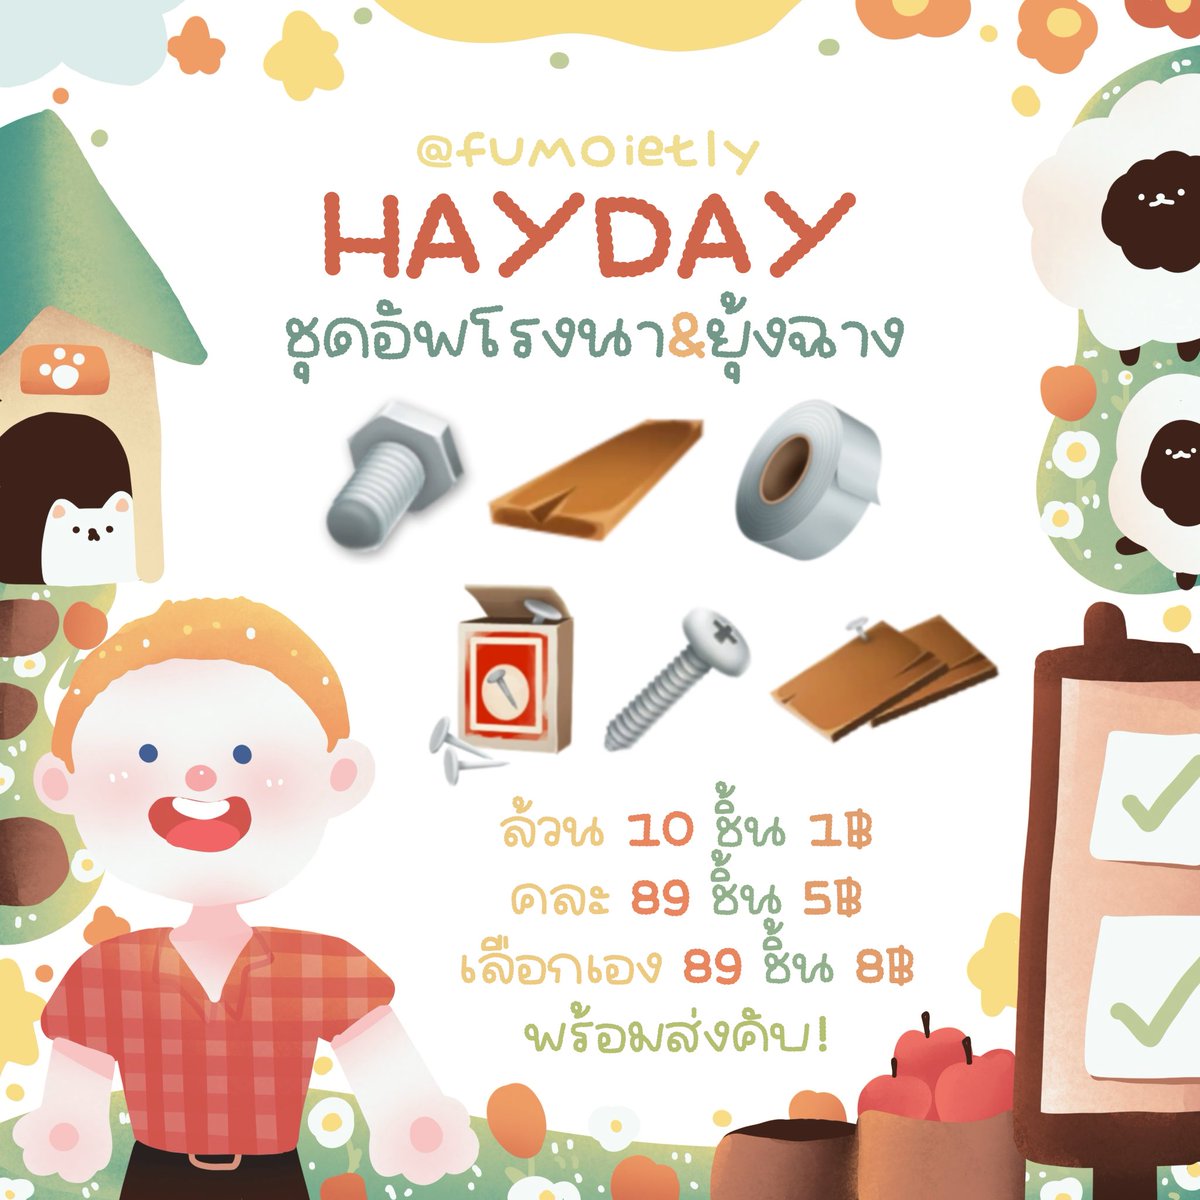 ᱸ˳ 🥖 Hayday .ᐟ🥛🍨

♡ ชุดอัพโรงนา - ยุ้งฉาง💡❕

♡ — 10 ชิ้น 1฿ 
♡ — 89 ชิ้น 5฿ (คละ) 
♡ — 89 ชิ้น 8฿ (เลือกได้)

! ทักไลน์ตอบไวมากคับ 🛋️ ✿
꒰ ⁺🧴Add line :  lin.ee/KCSJqgF

#hayday #haydaythailand #ตลาดนัดhayday #ไอเทมhayday #ขายของhayday #ขายของเฮเดย์